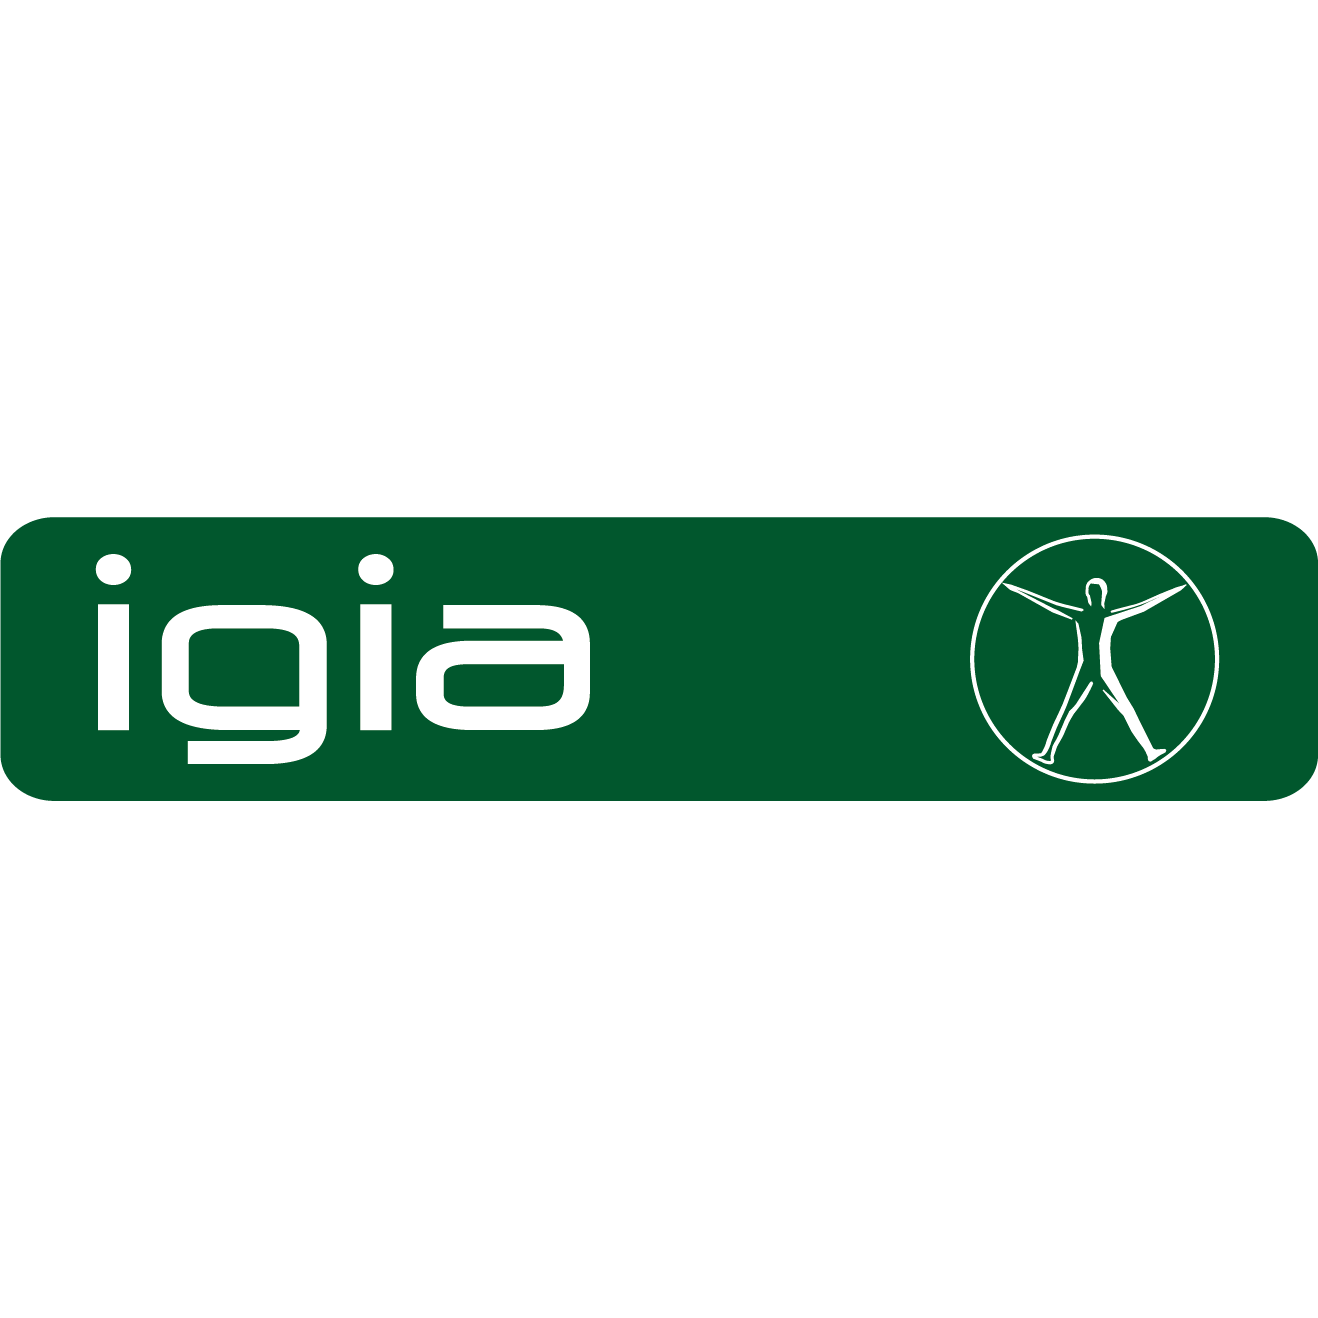 igia Physiotherapie und Heilgymnastik Salzburg Aigen Logo